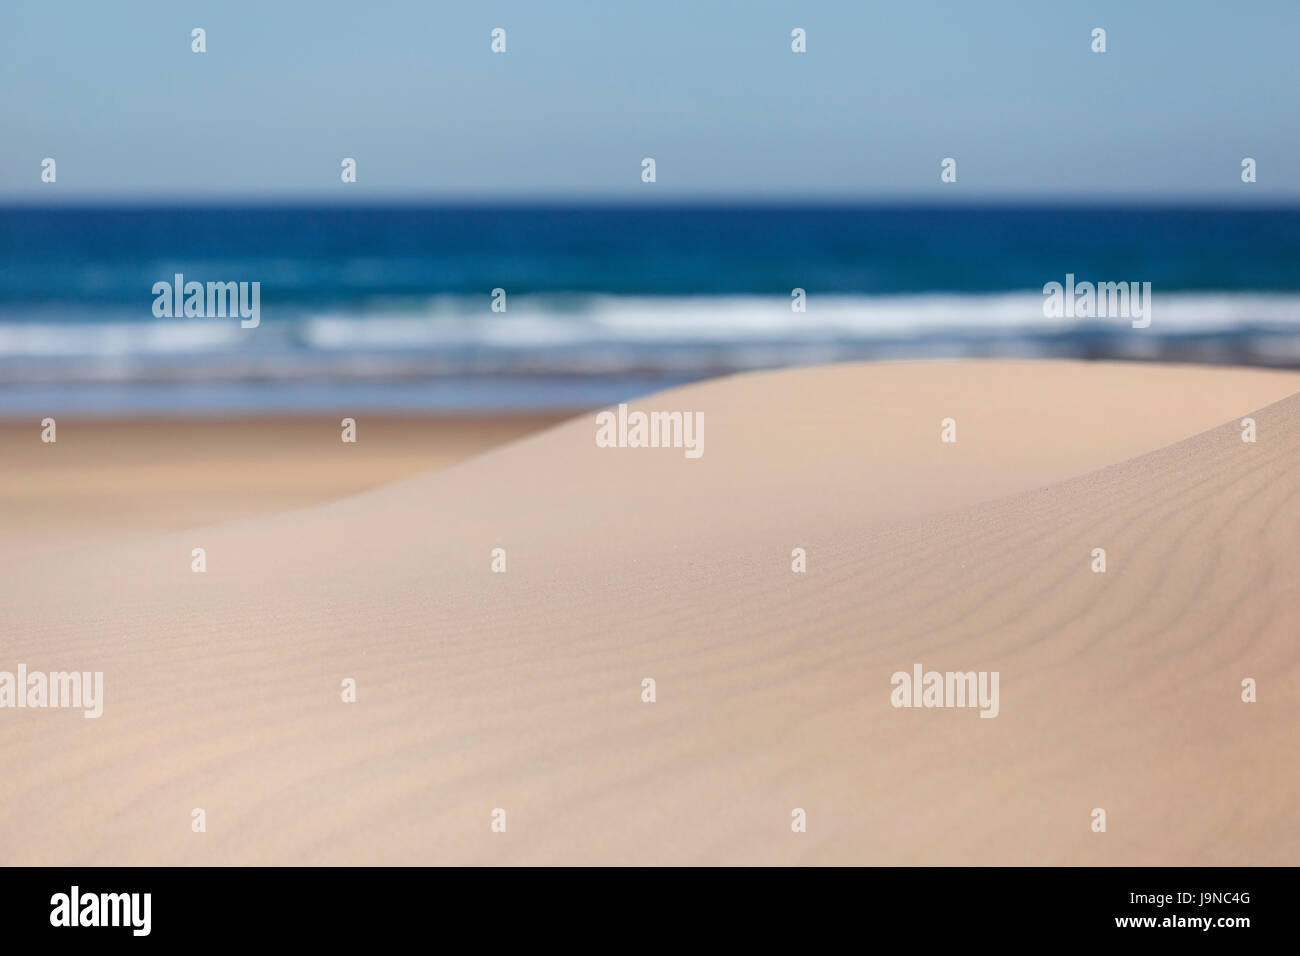 Stockton beach near Anna Bay in New South Wales, Australia. Stock Photo